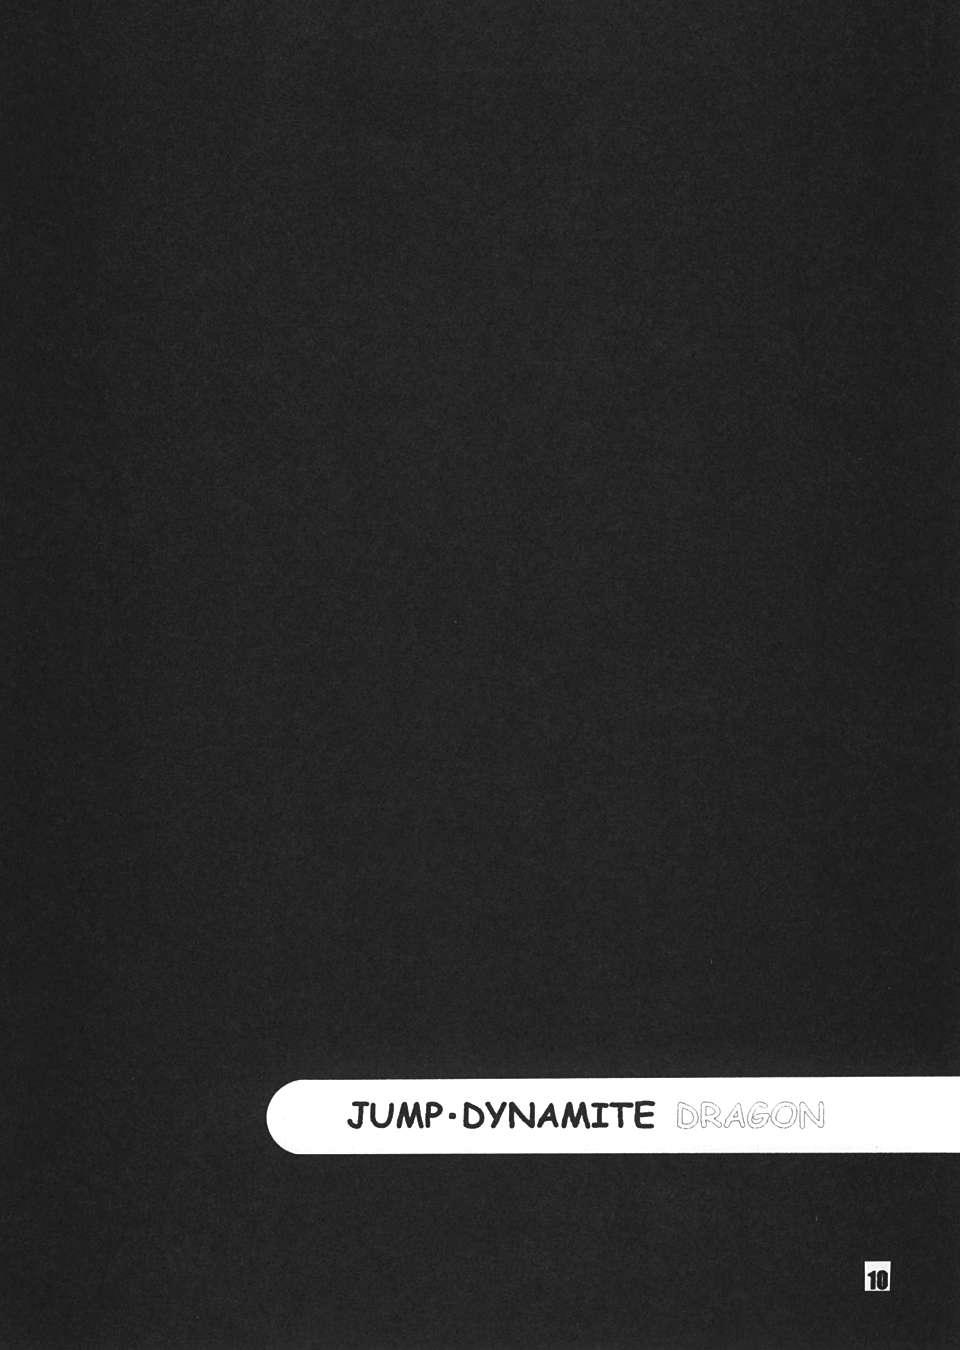 Jump Dynamite Dragon 8